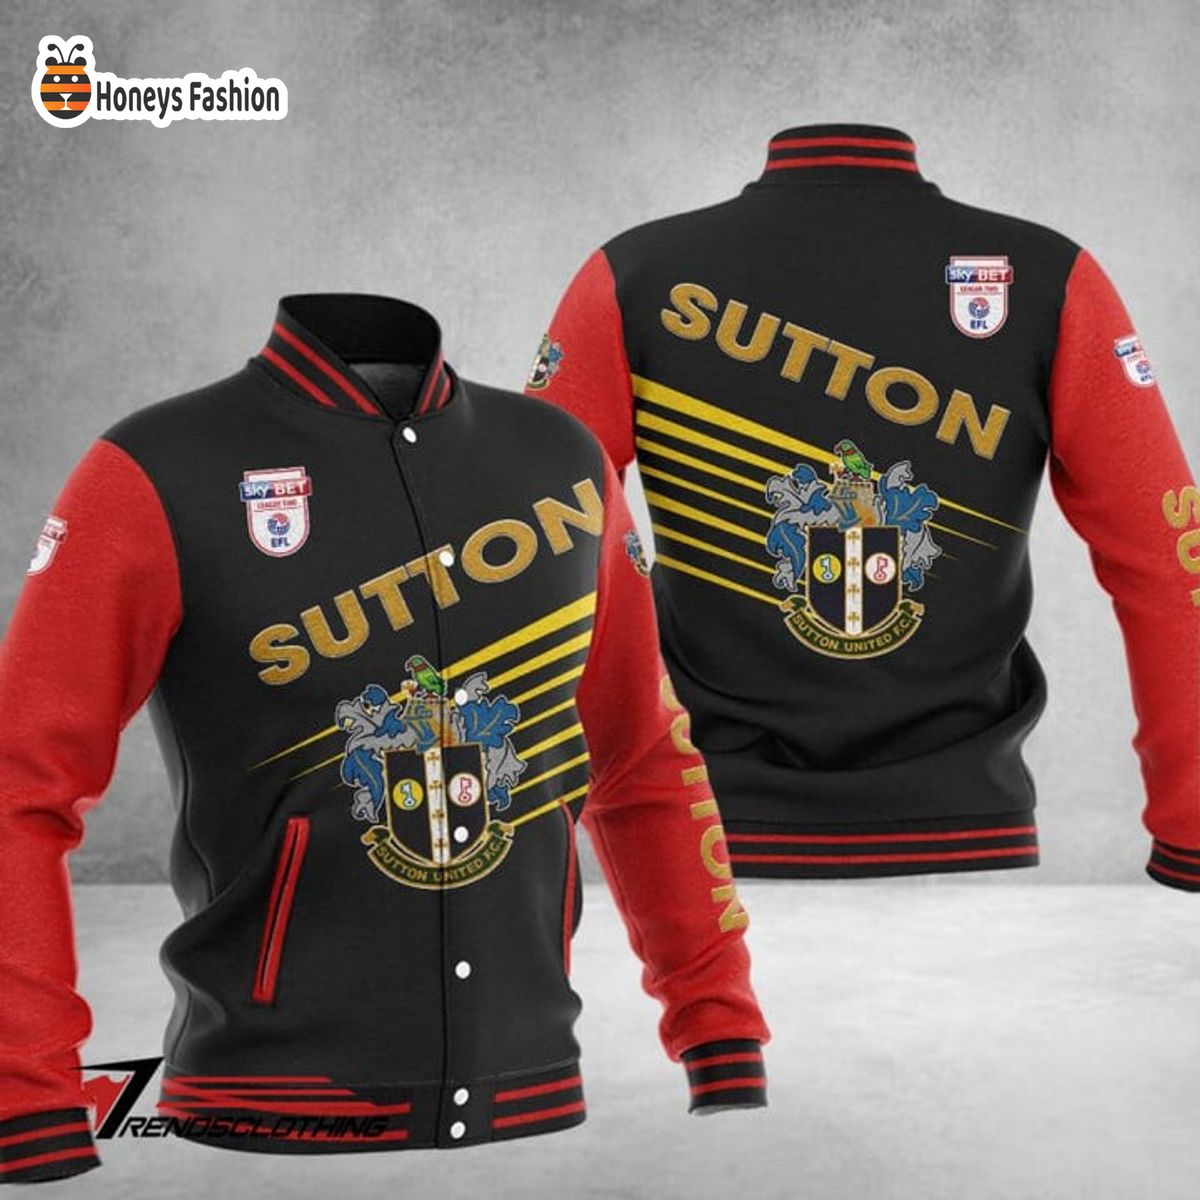 Sutton United Baseball Jacket